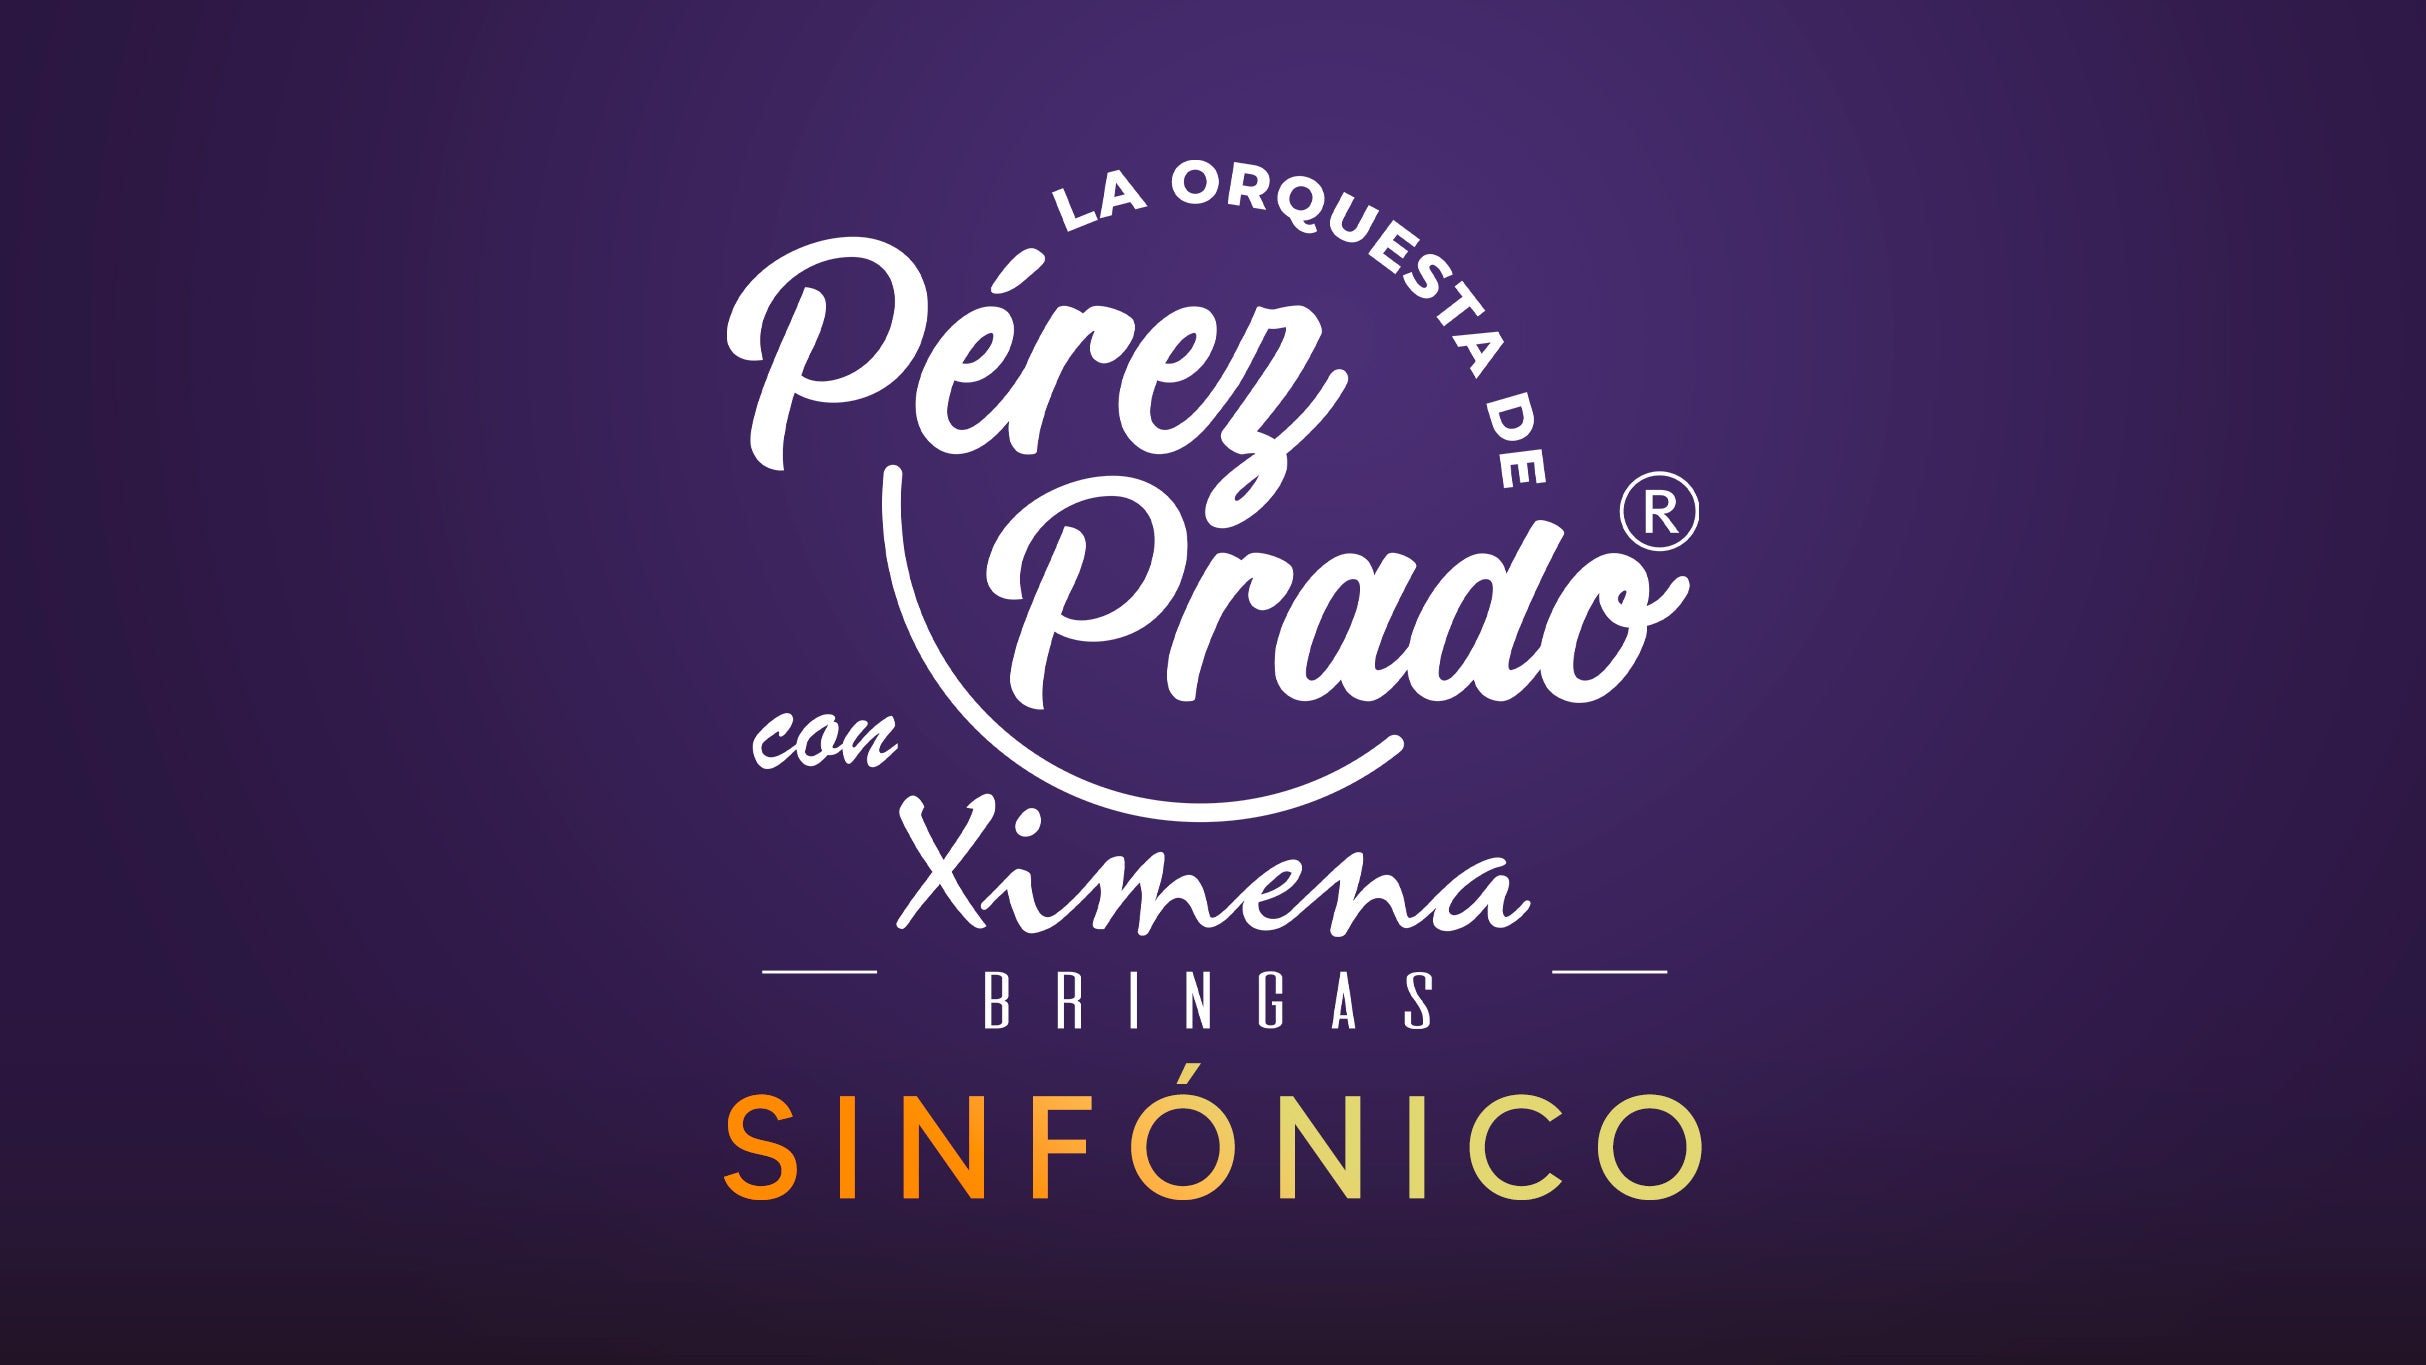 La Orquesta de Perez Prado